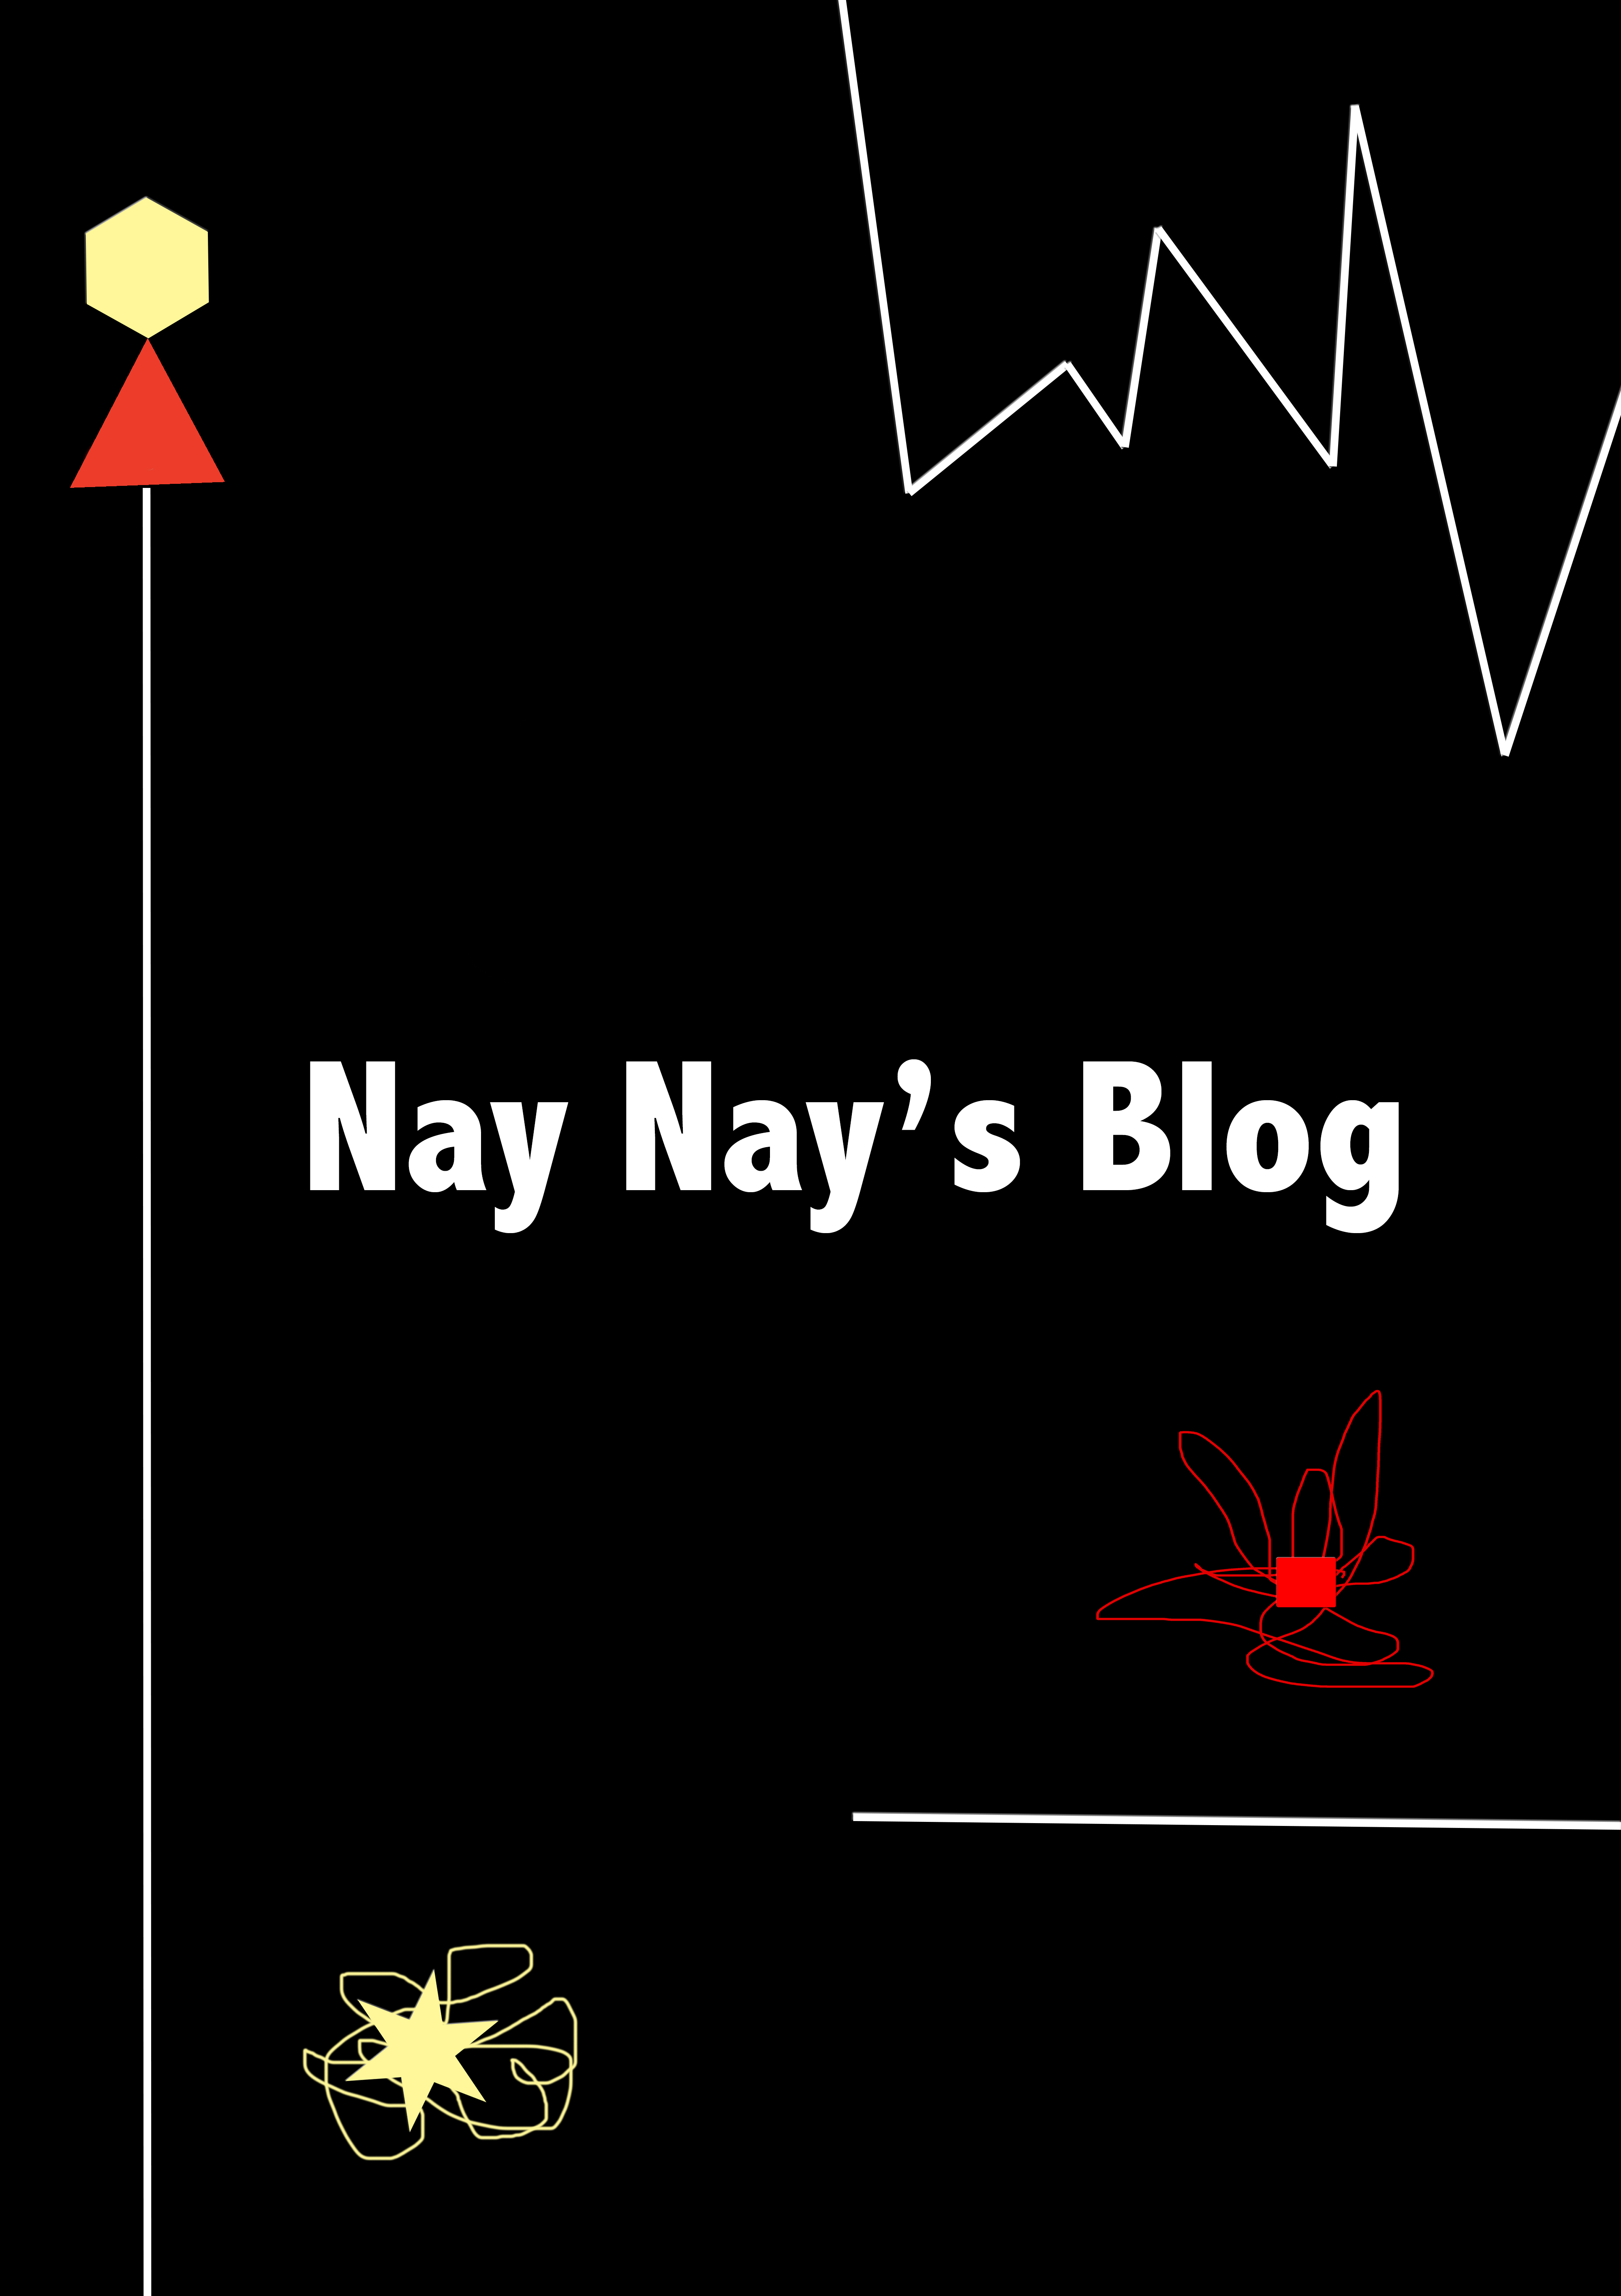 Nay Nay's Blog